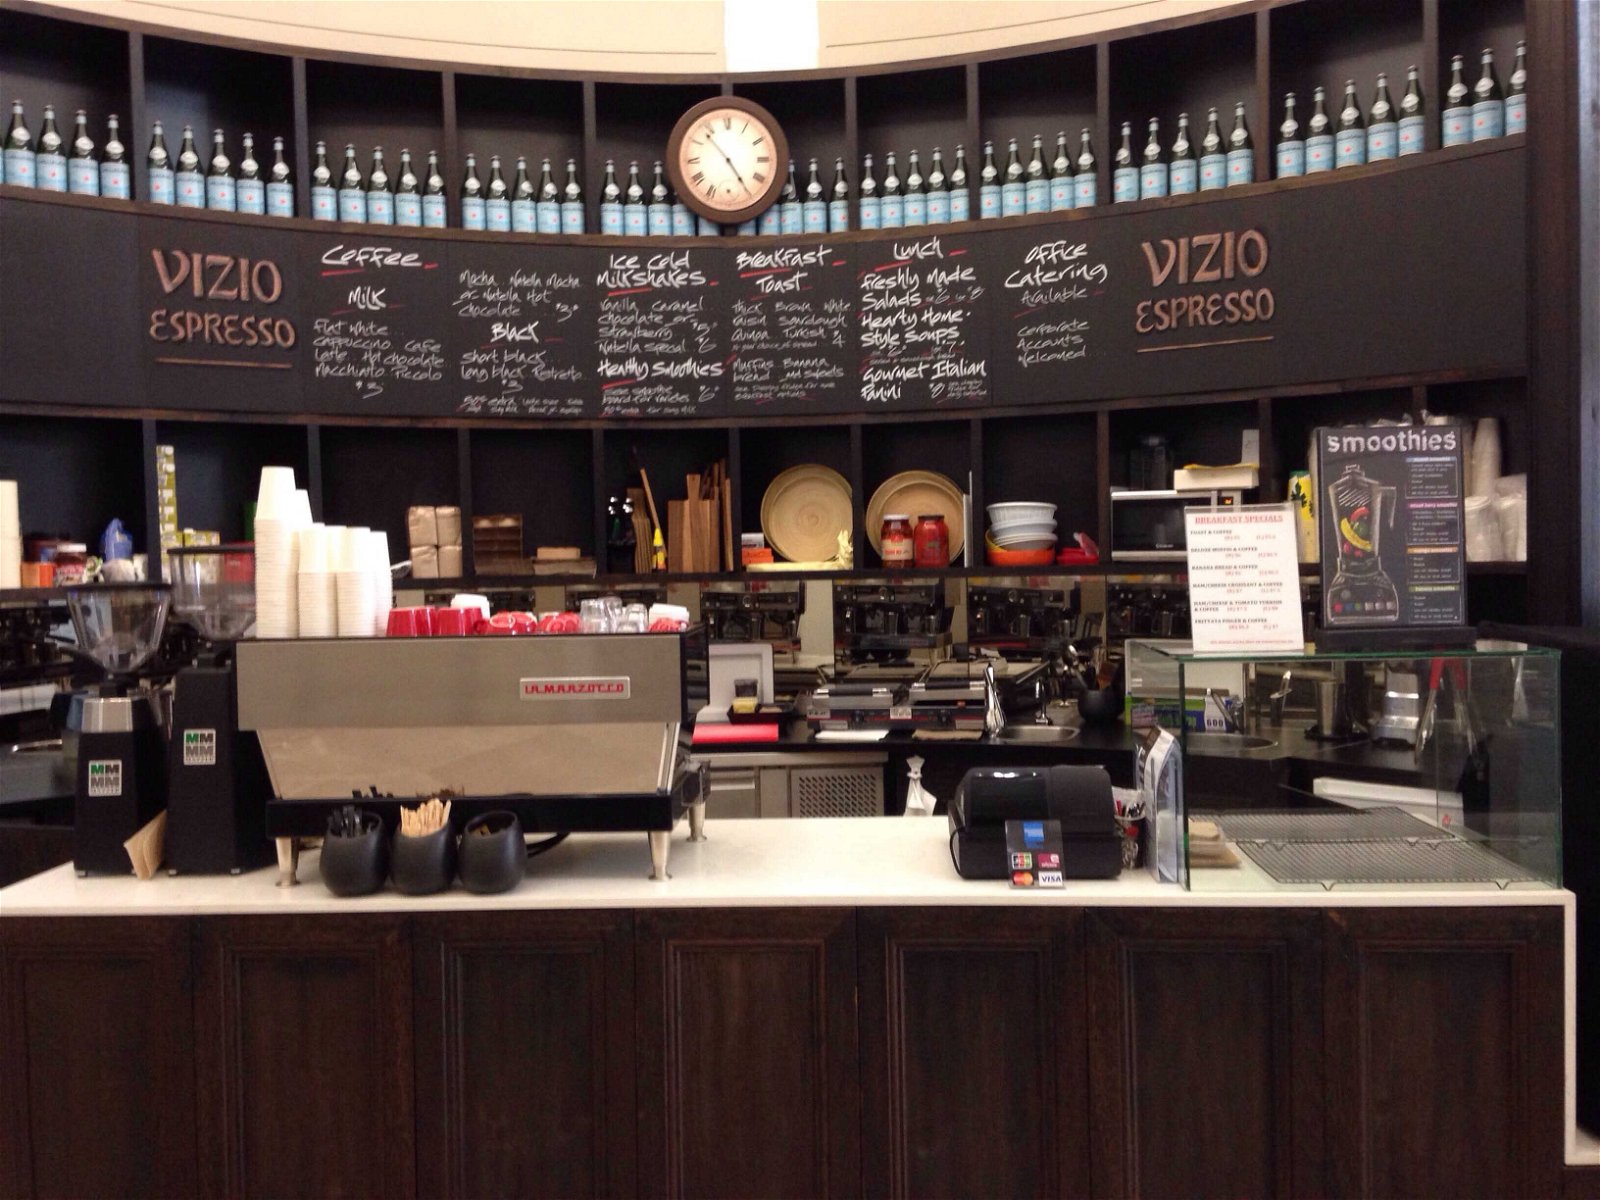 Vizio Espresso - Food Delivery Shop